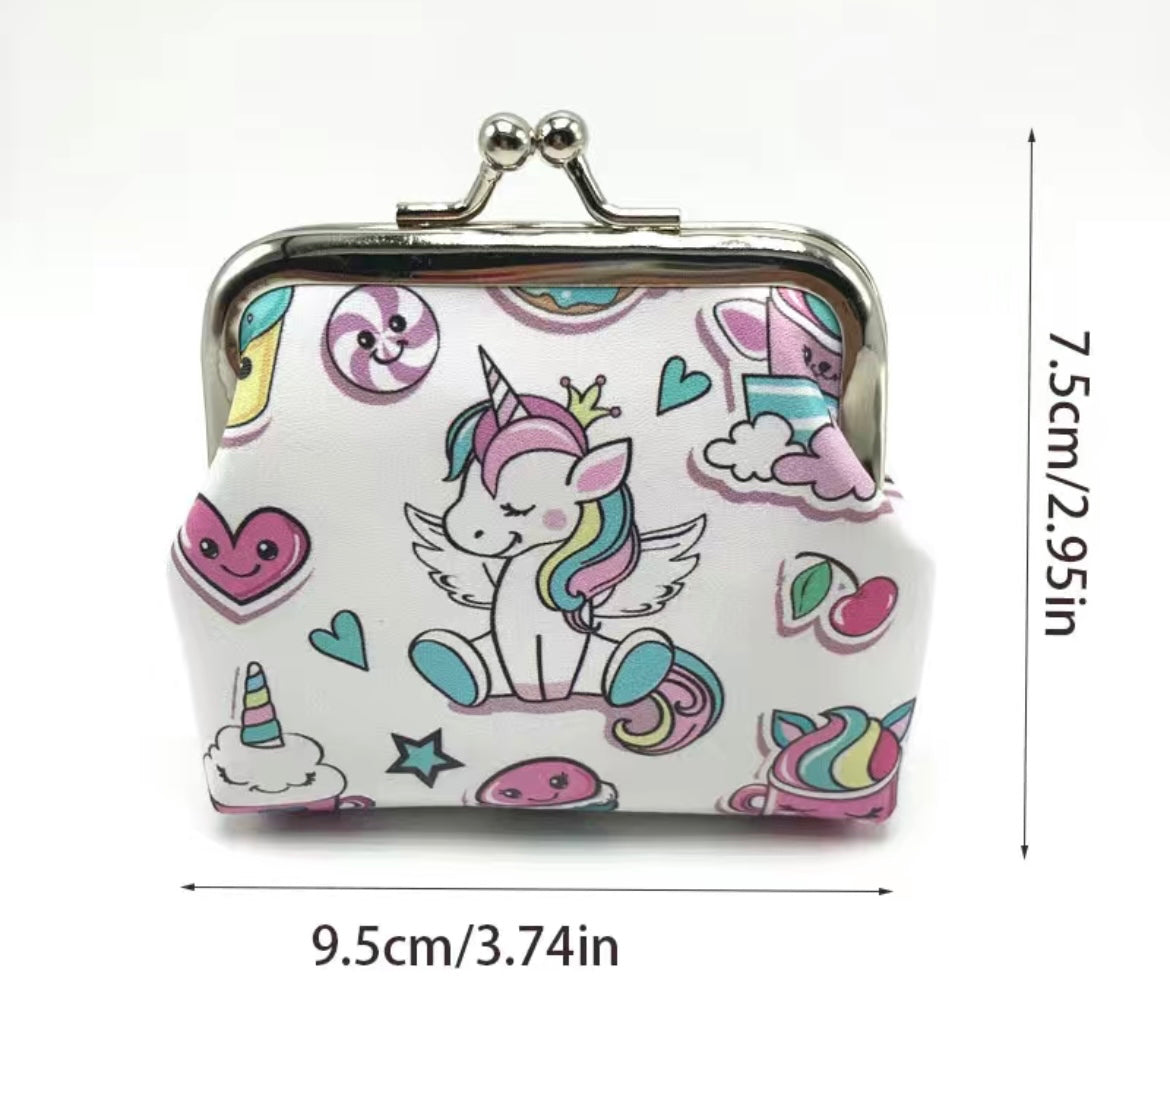 Buy Kaushiki Enterprises - One Stop Unicorn sling bag for girls  (Multicolor, Unicorn large capacity sling bag) at Amazon.in